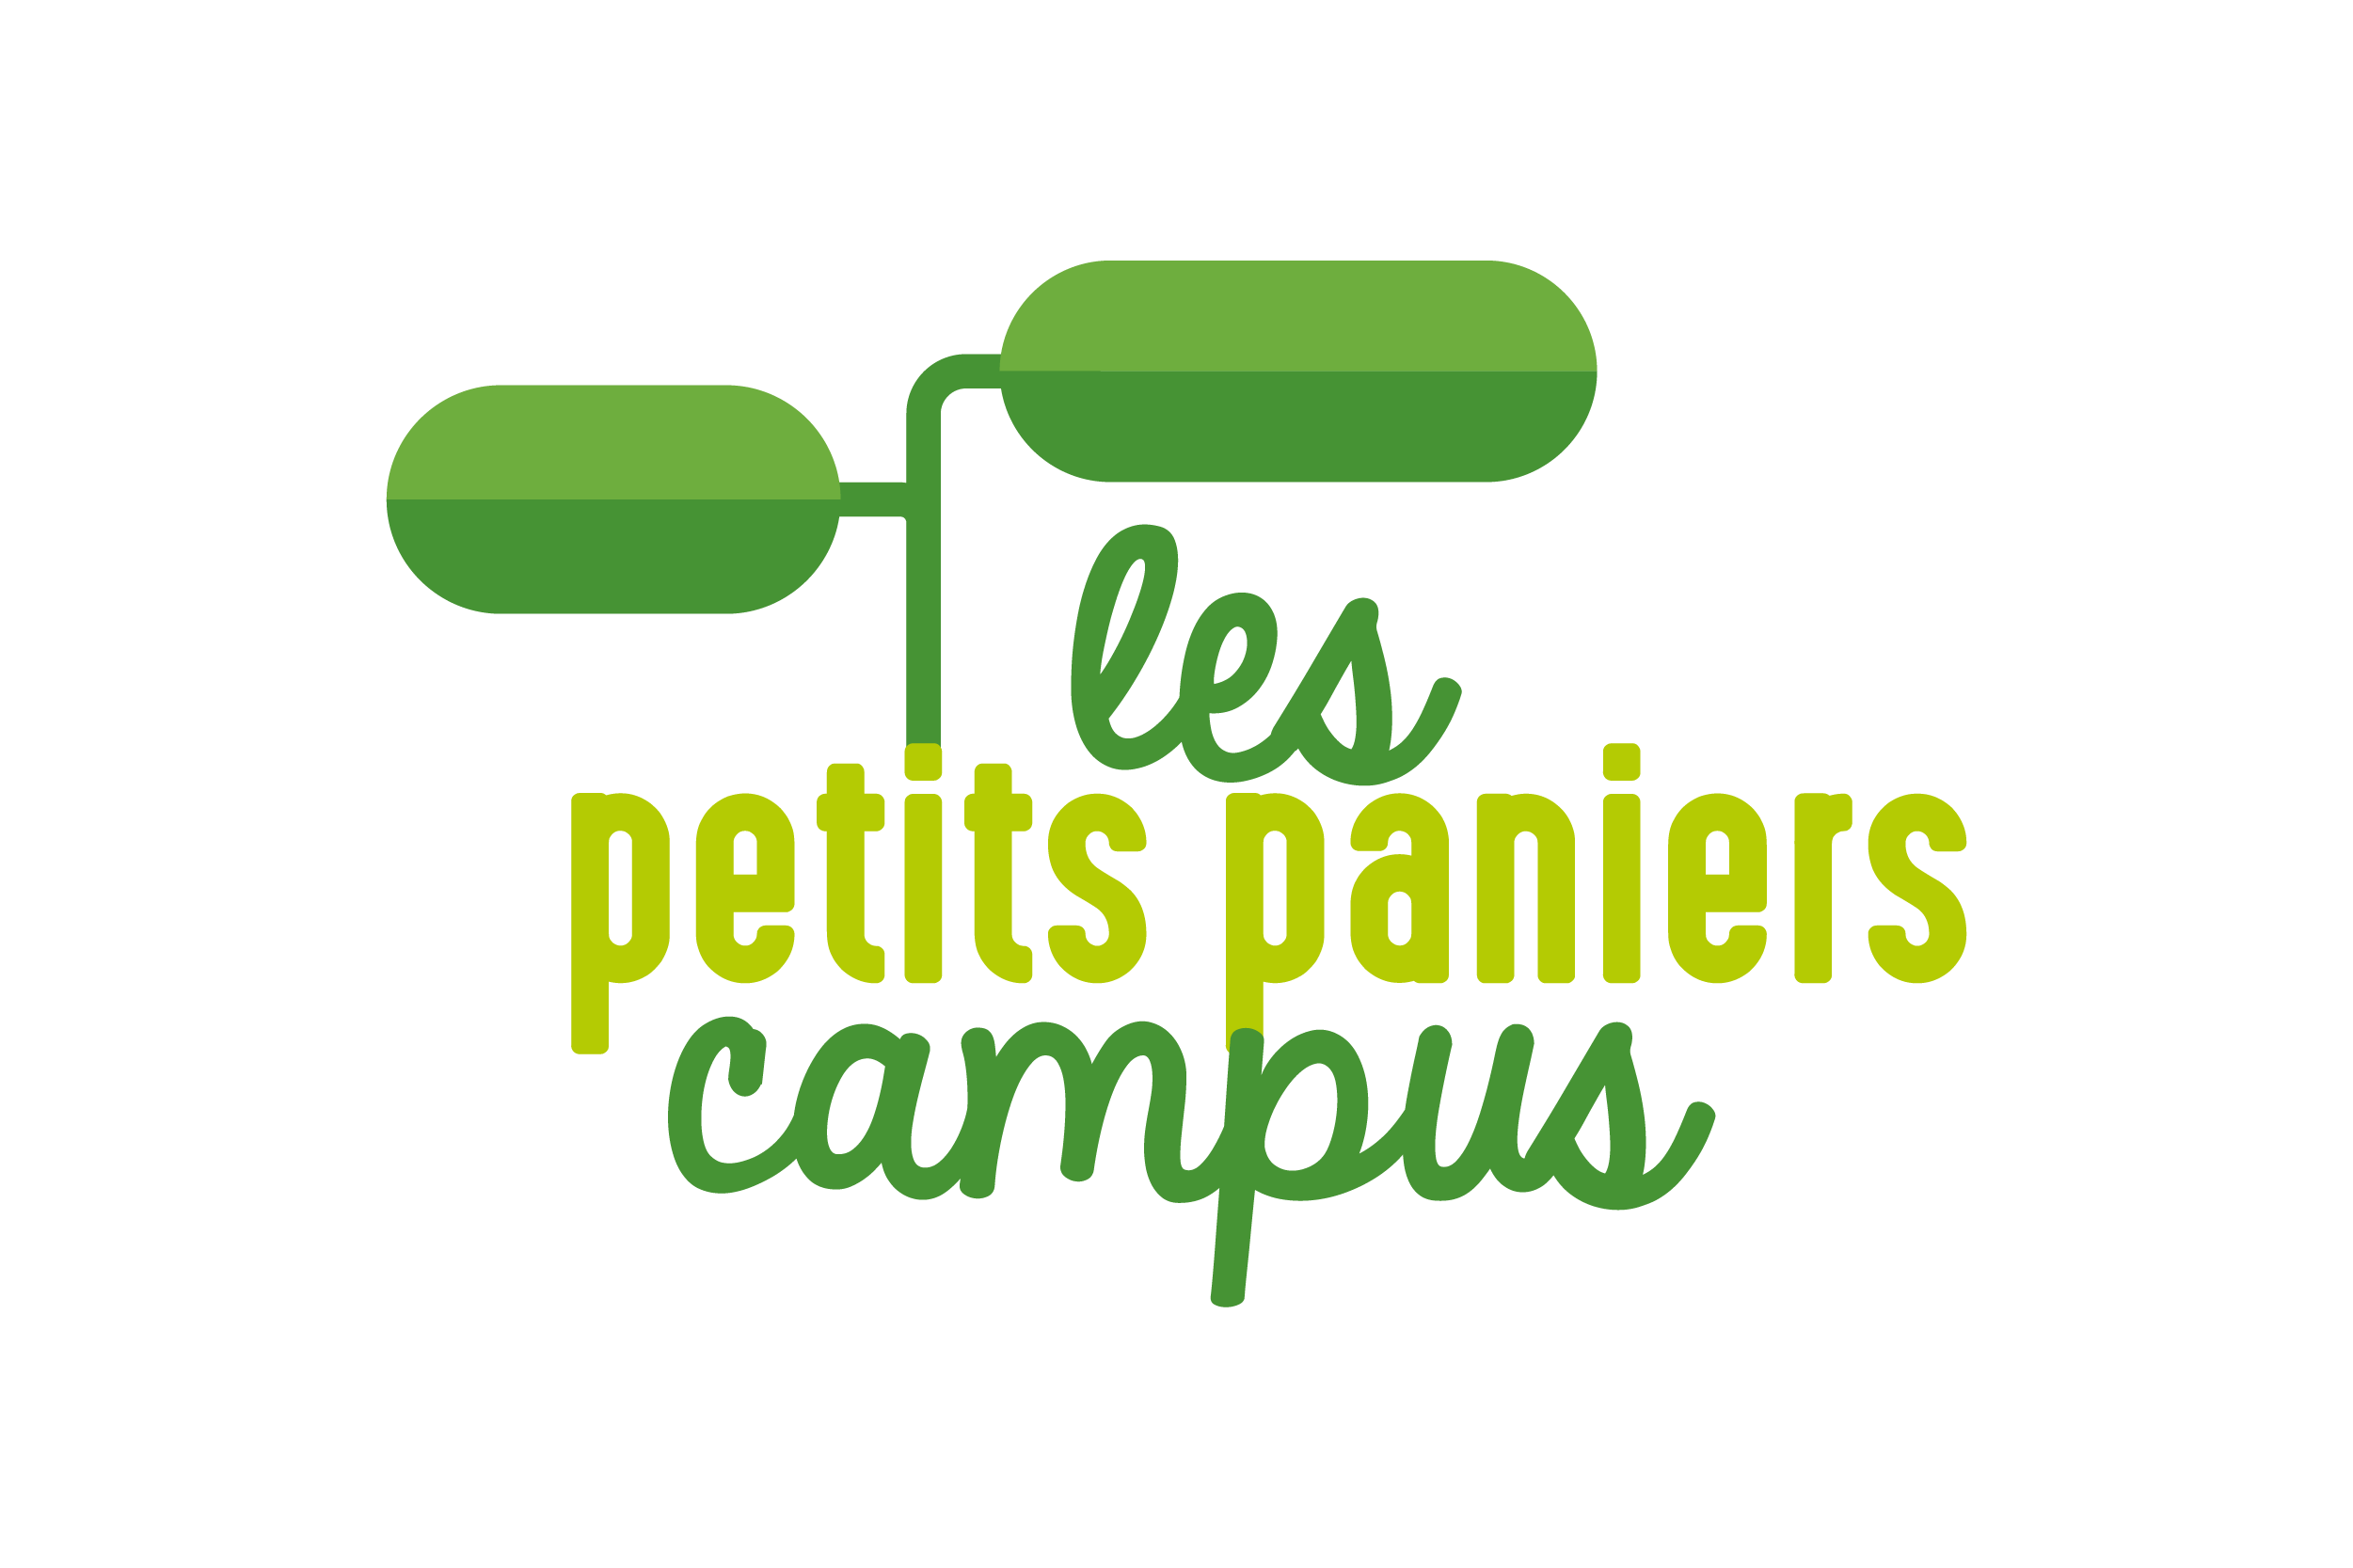 Petitspaniers_logo